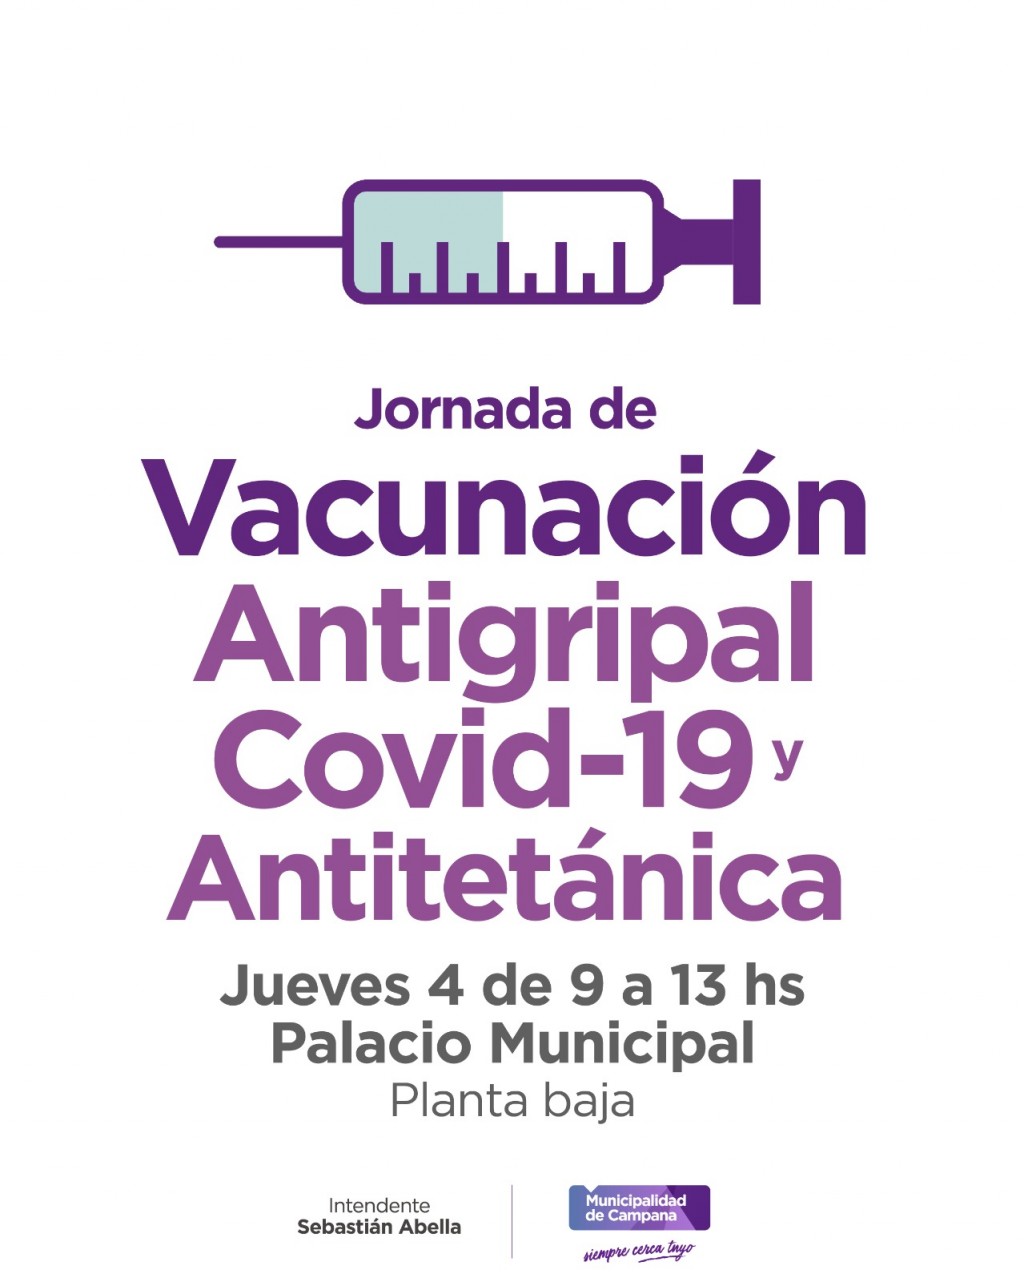 Este jueves habrá operativo de vacunación en el Palacio Municipal